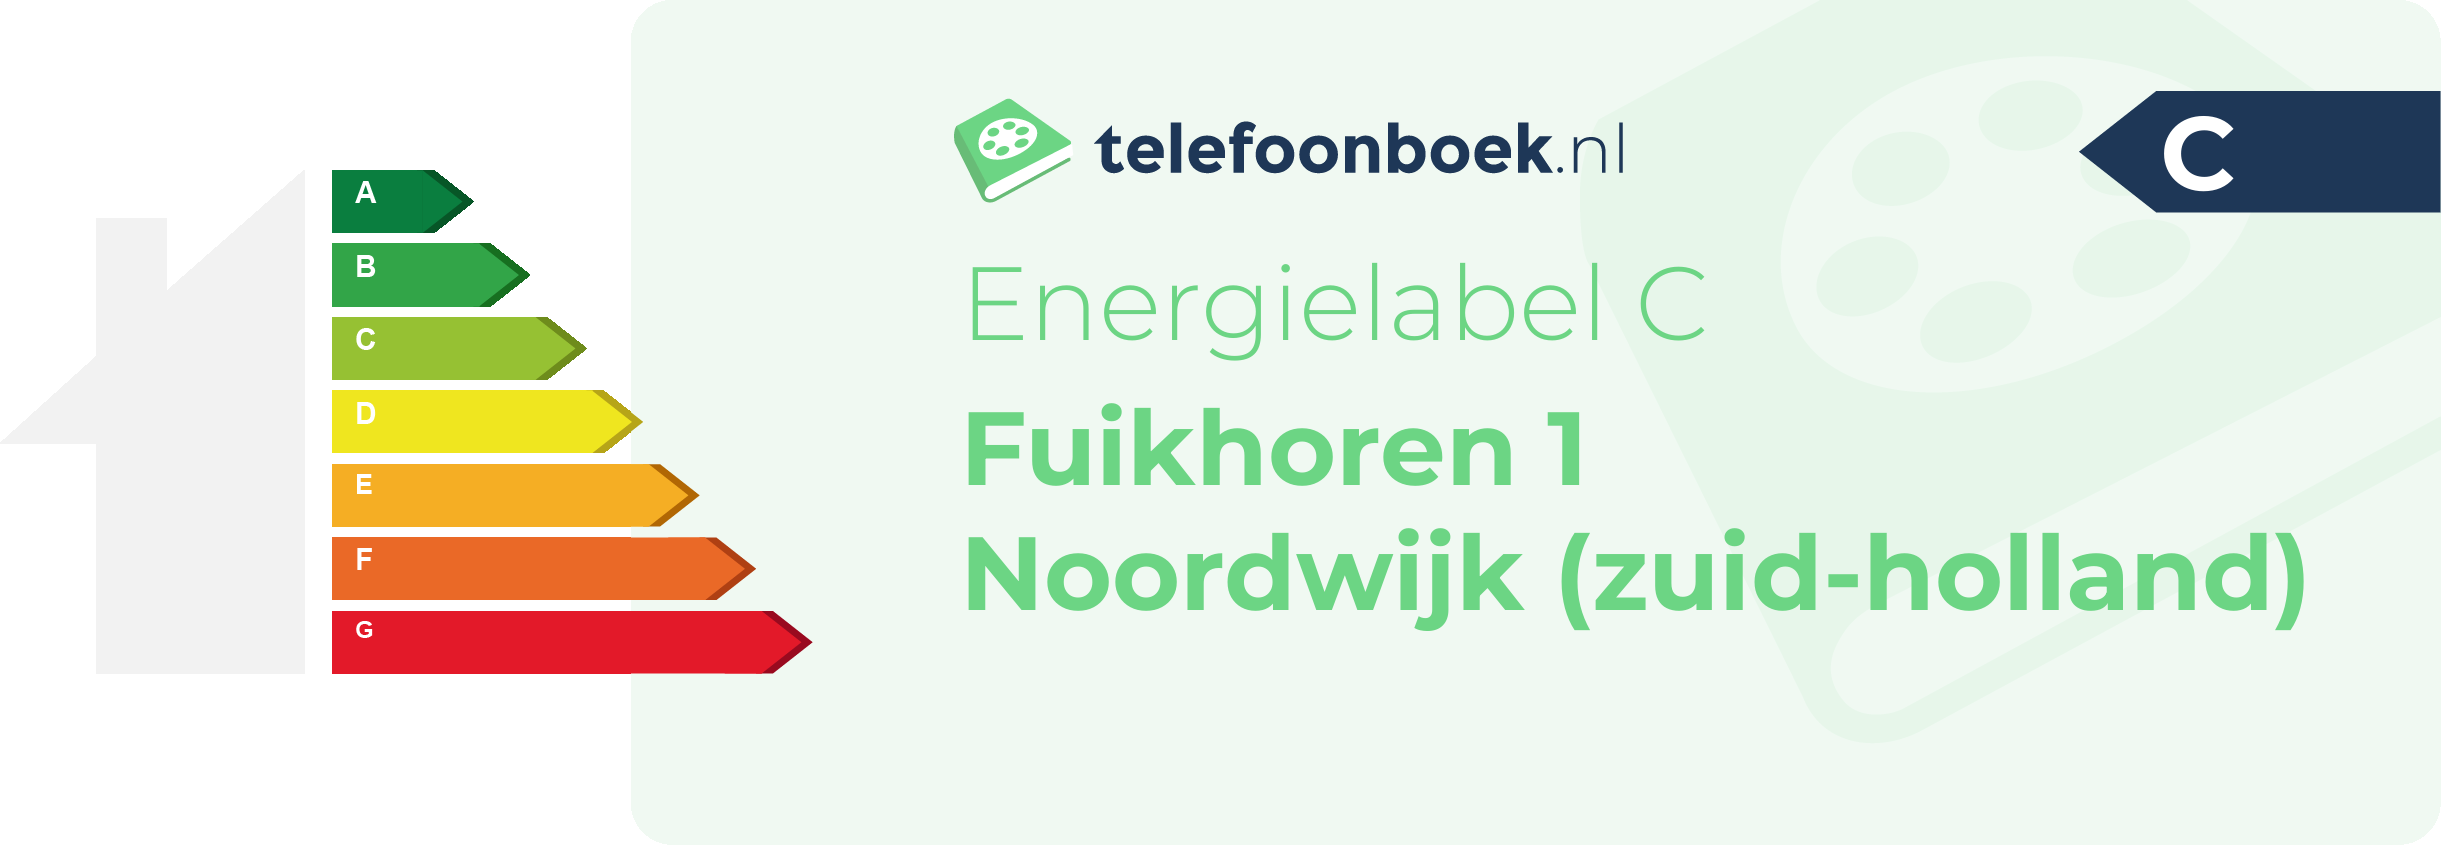 Energielabel Fuikhoren 1 Noordwijk (Zuid-Holland)